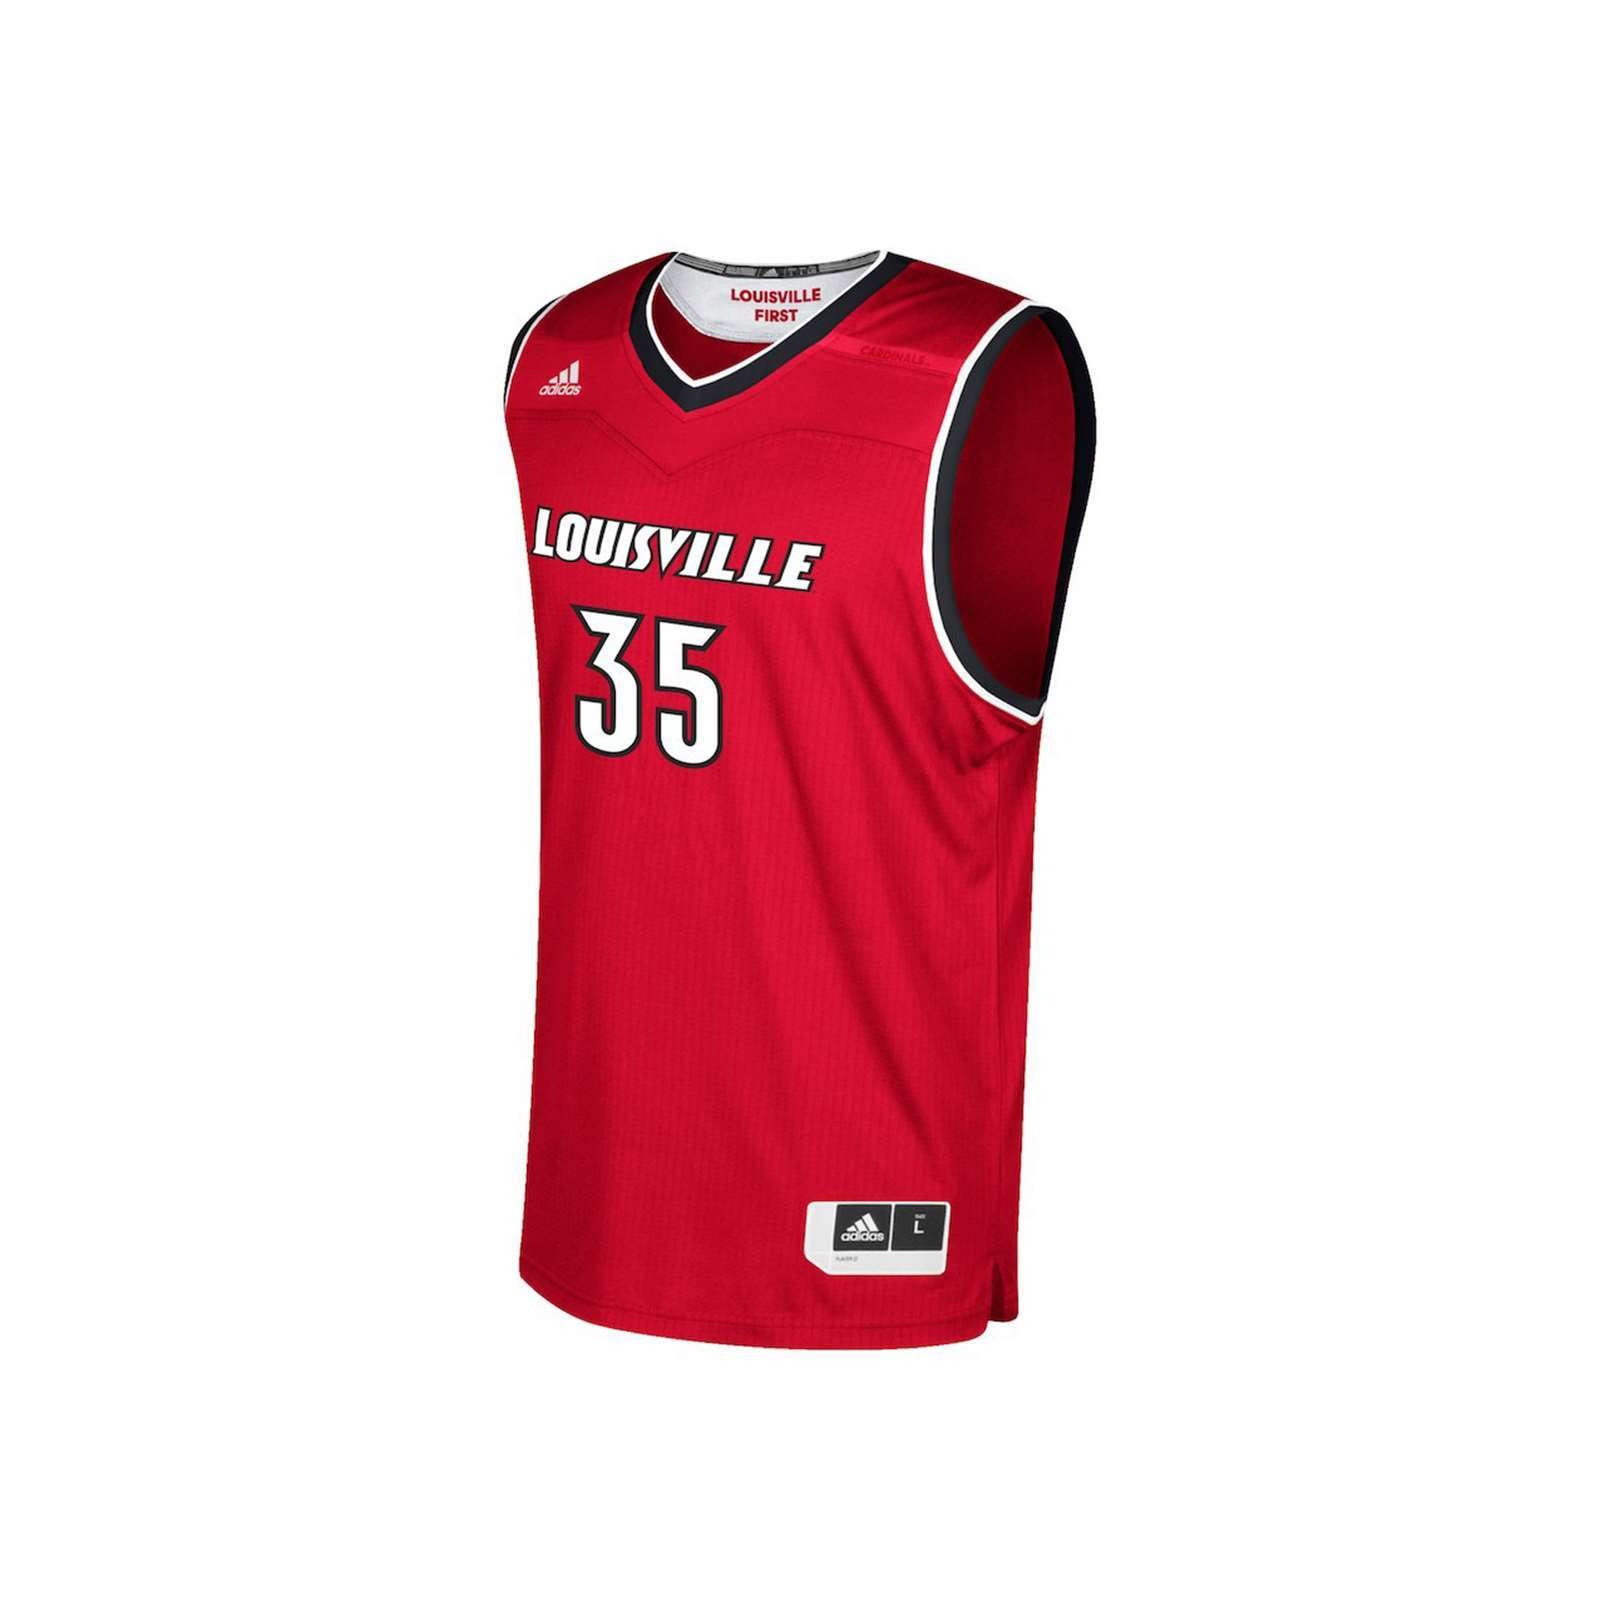 NCAA Louisville Cardinals Embroidered Sweatshirt, Louisville